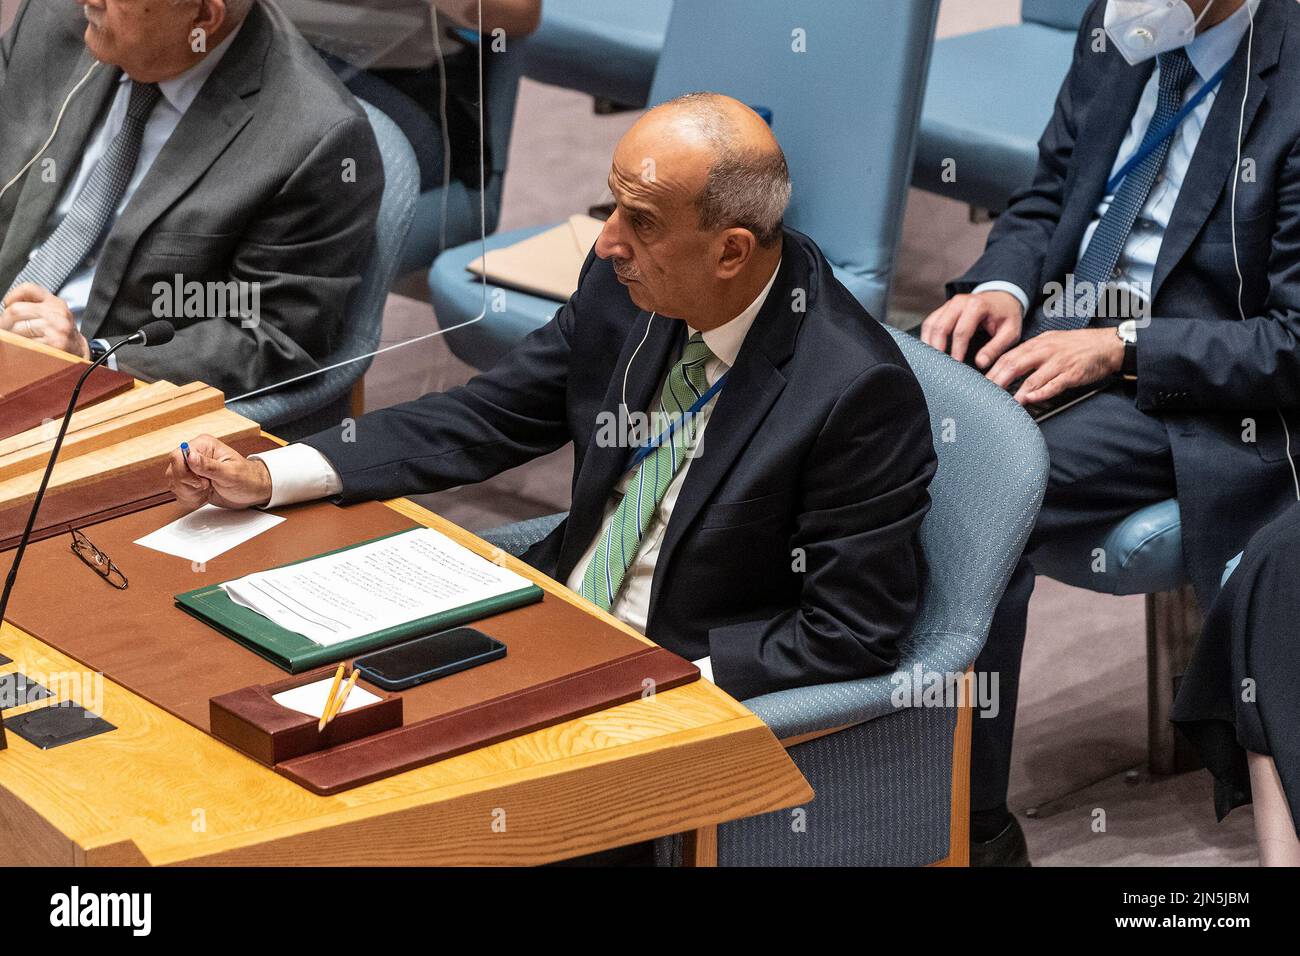 Osama Mahmoud Abdel Khalek Mahmoud, Representante Permanente de Egipto ante las Naciones Unidas, asiste a la reunión del Consejo de Seguridad sobre la situación en Oriente Medio, incluida la cuestión palestina en la sede de la ONU (Foto de Lev Radin/Pacific Press) Foto de stock